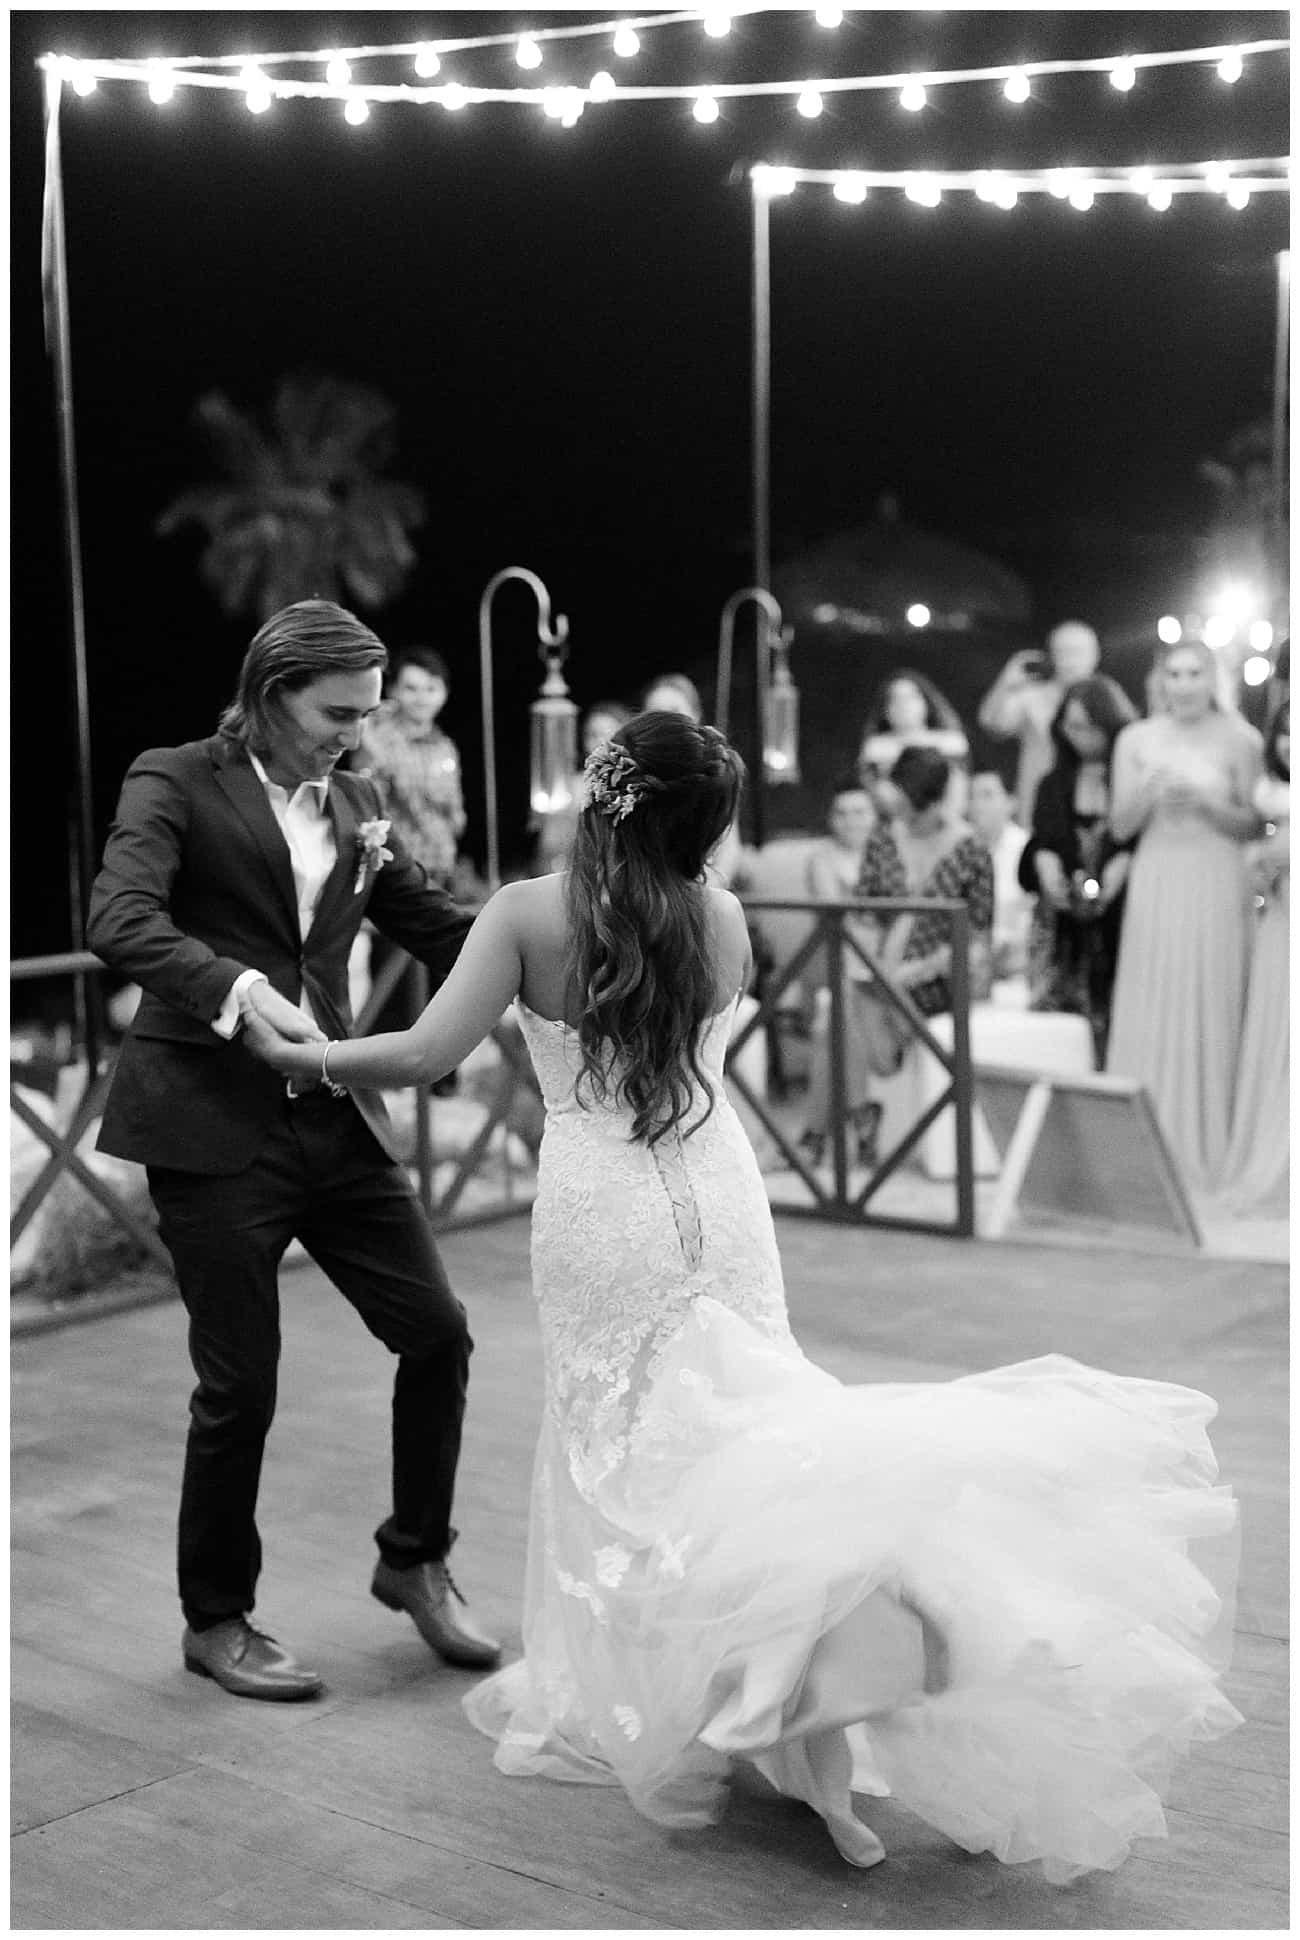 Cabo_wedding_Photographer_Sara_Richardson